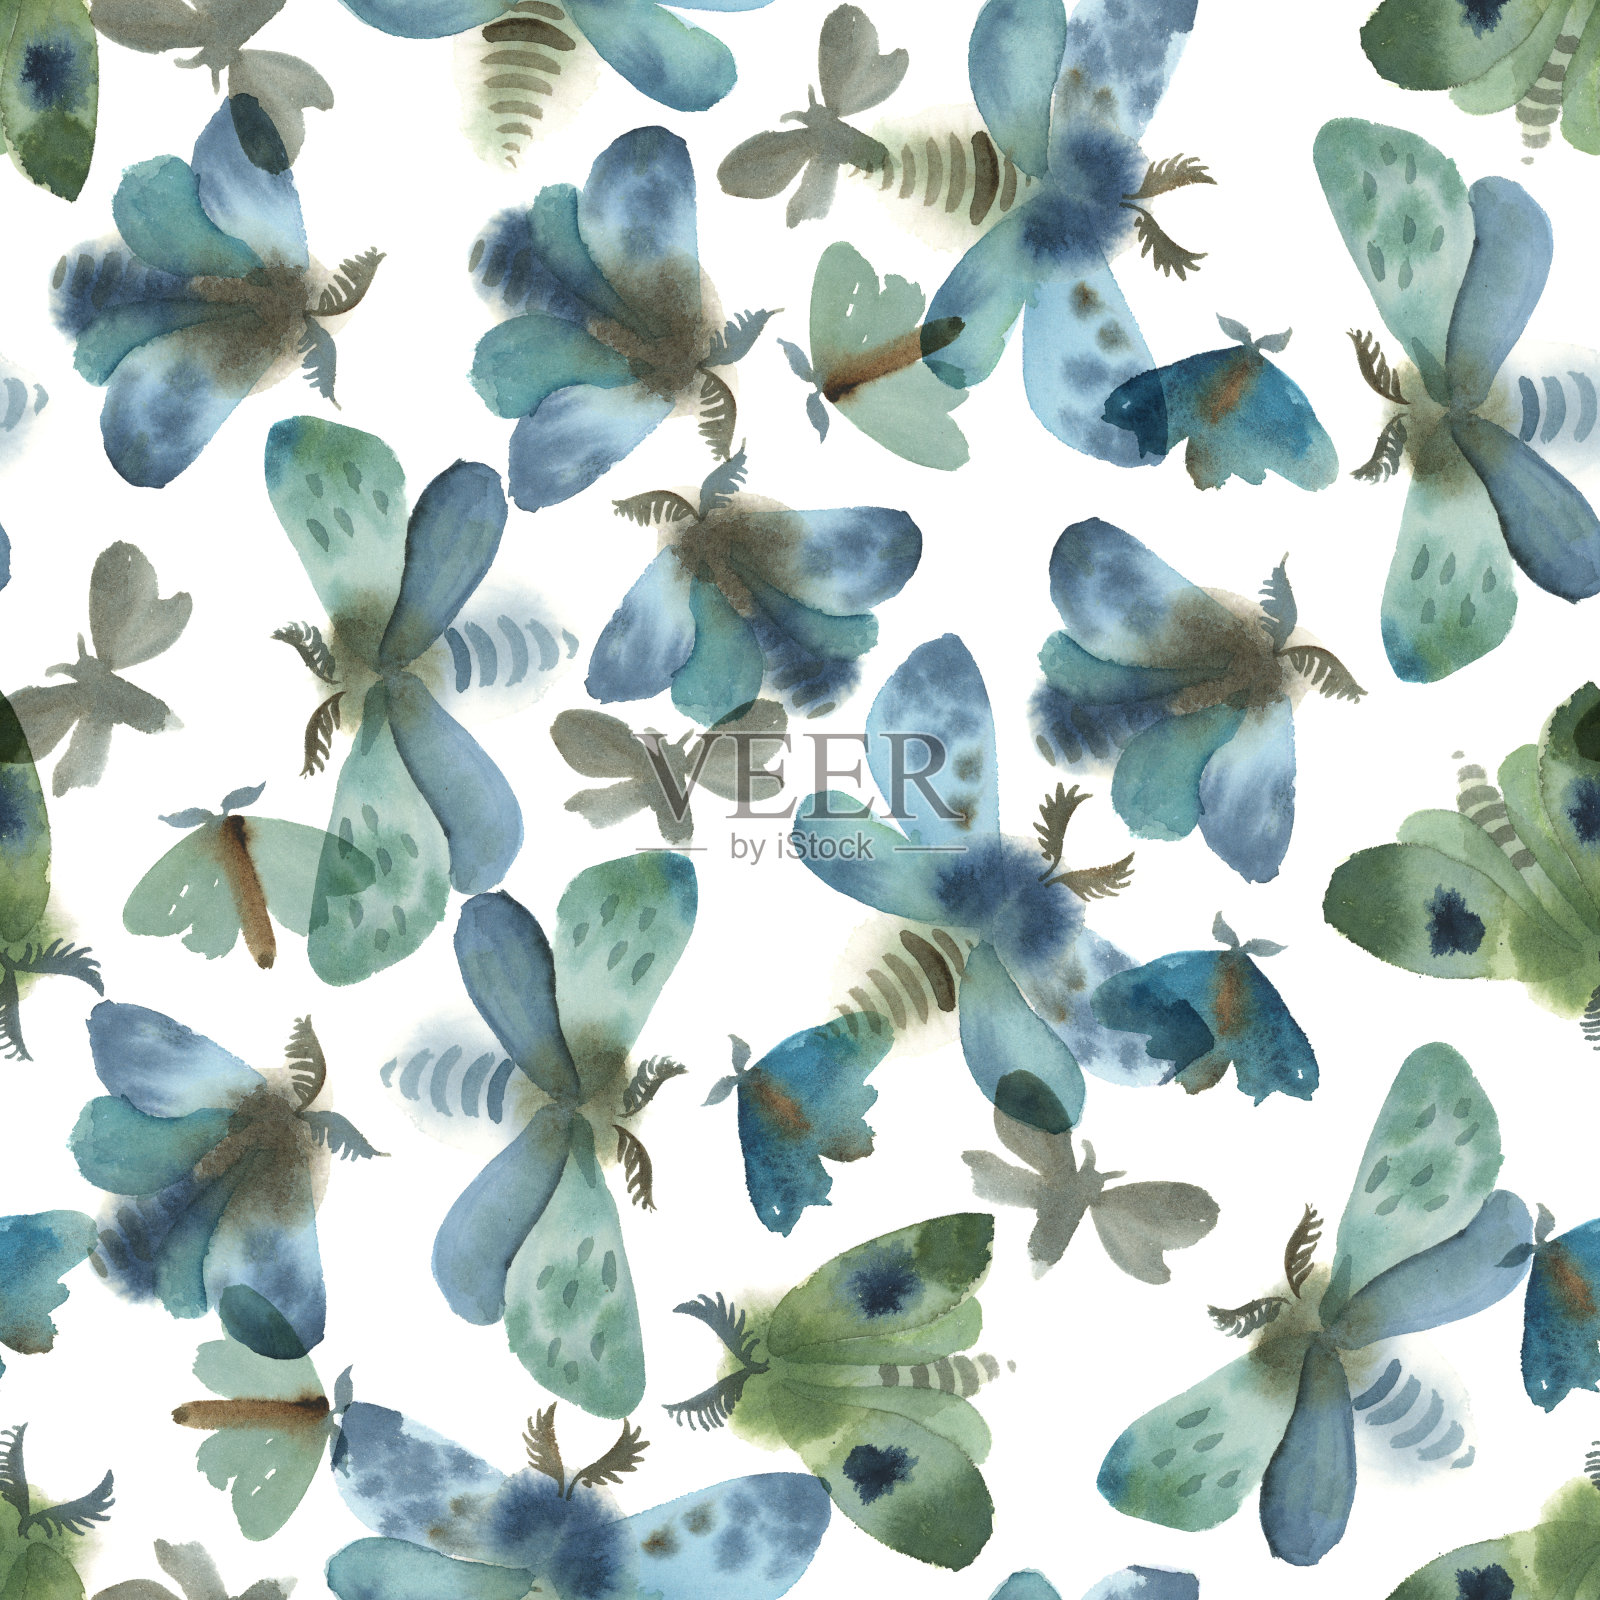 水彩插图。一组灰色，蓝色和绿色的蛾子插画图片素材